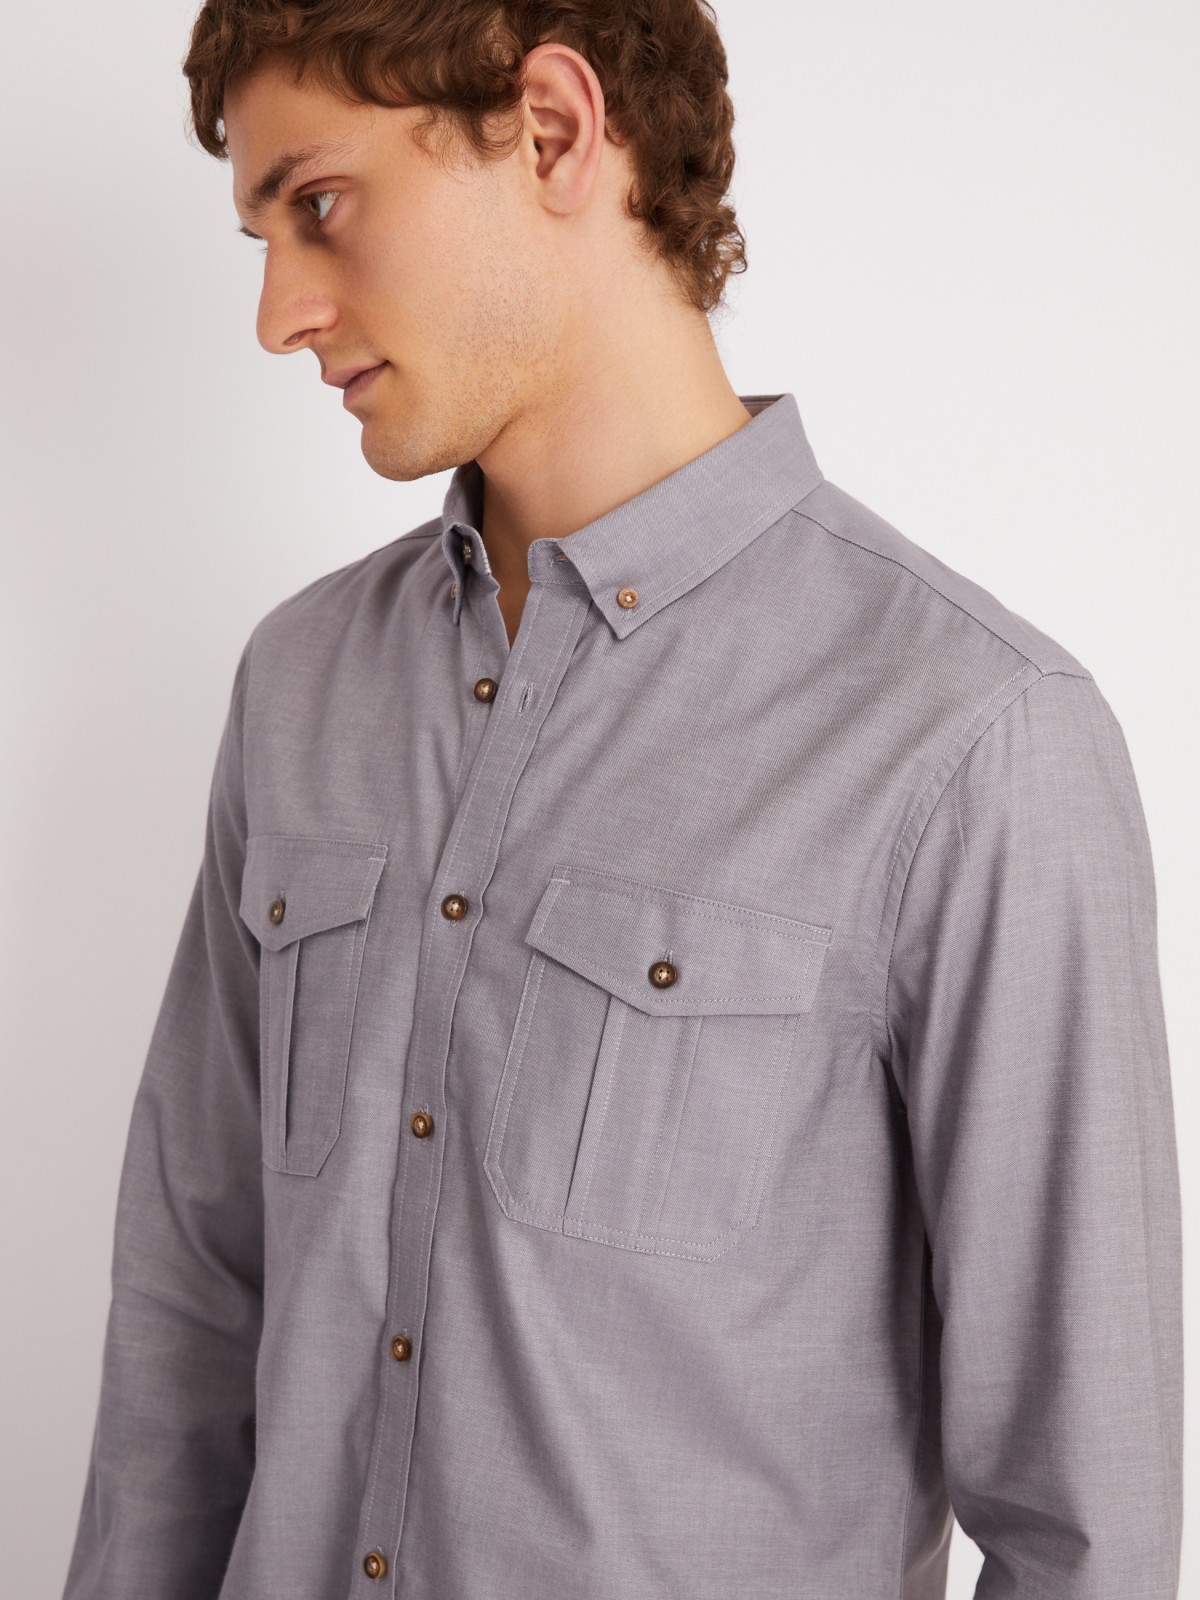 Рубашка прямого силуэта из хлопка с длинным рукавом zolla 213312162013, цвет серый, размер S - фото 4